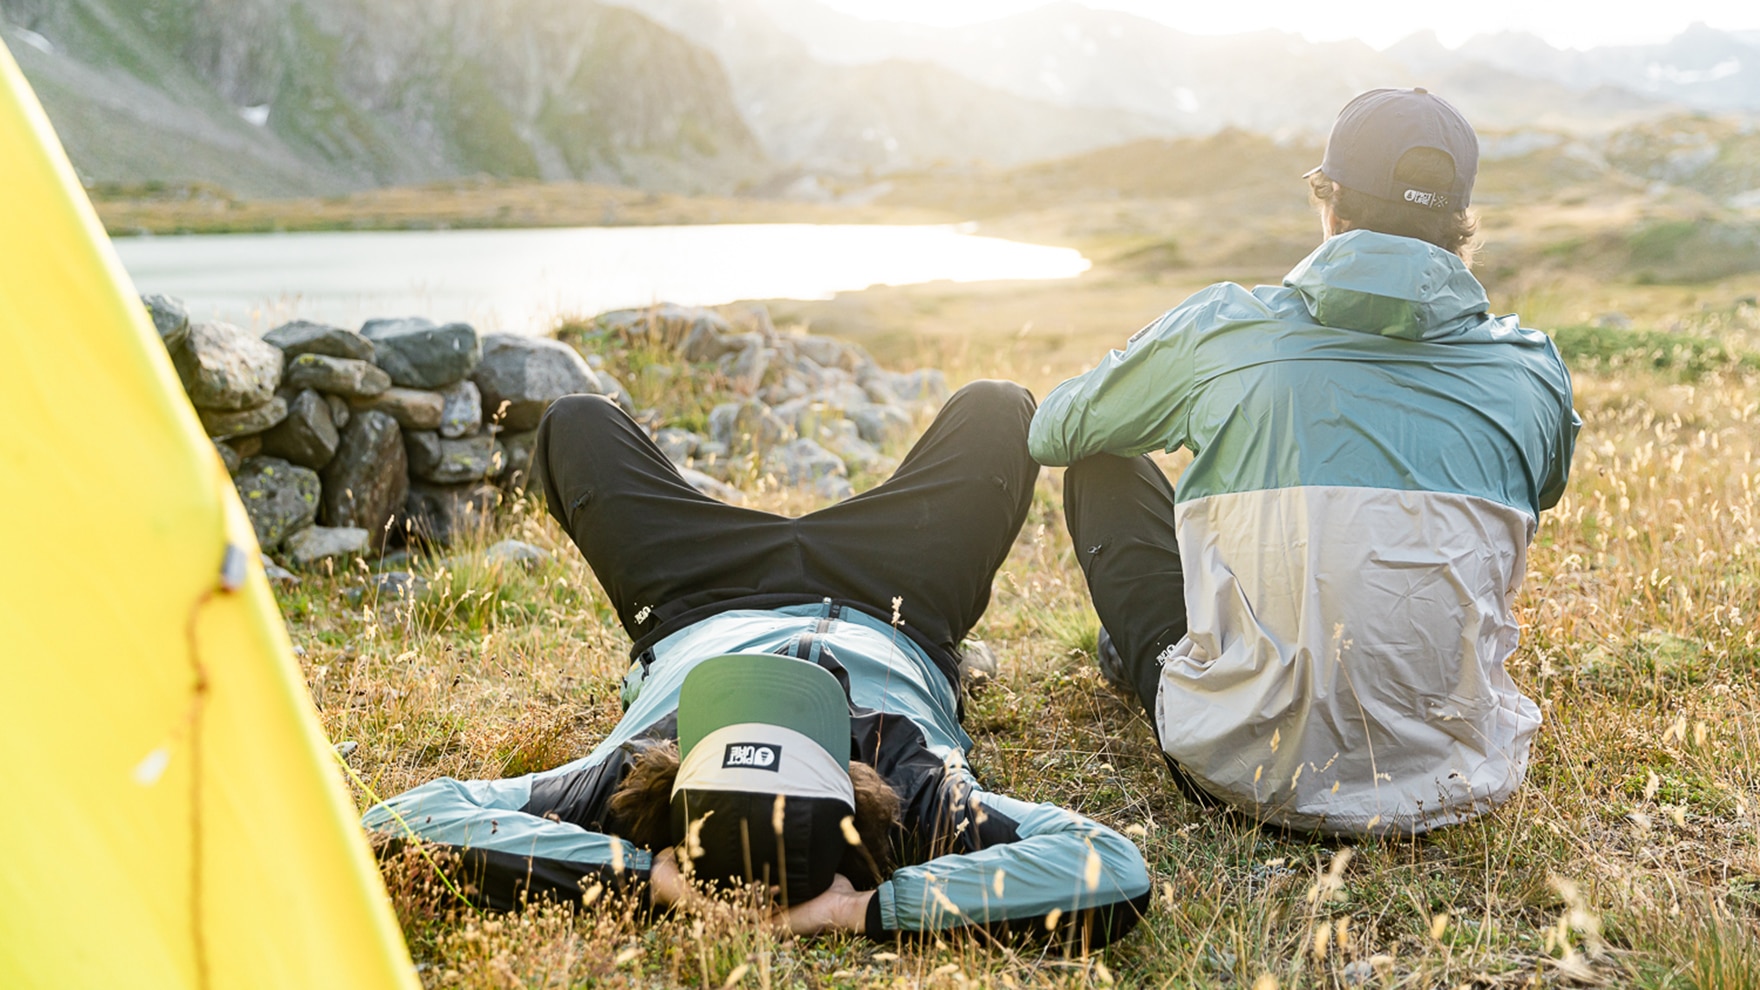 Das leichte Wailer Jacket kannst du überall mit hinnehmen: auf Wanderungen bei schönem Wetter oder abends zum Campen am See.